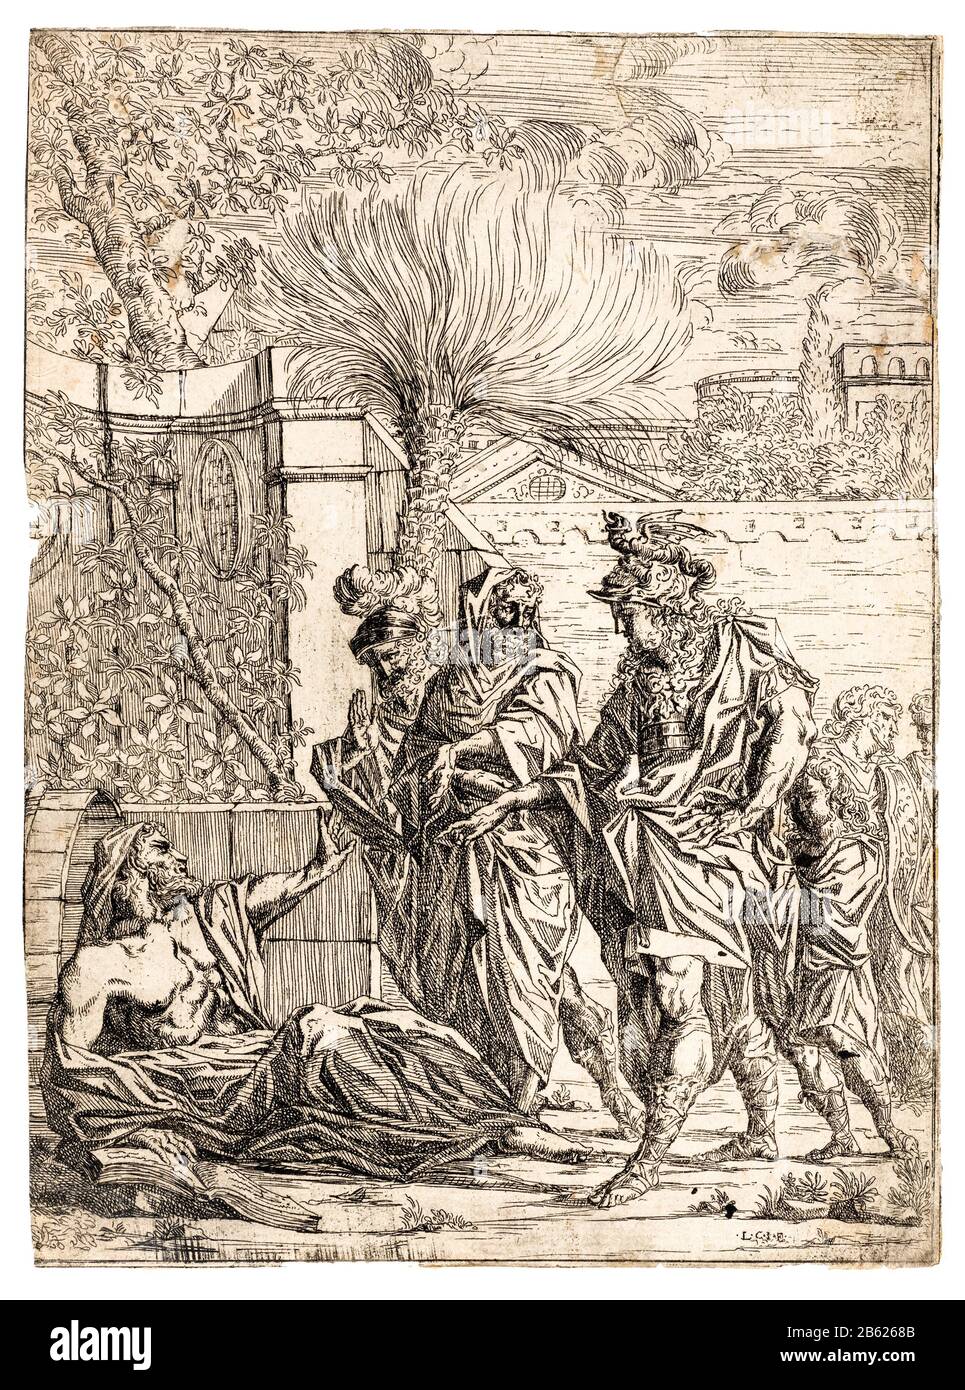 Alexander der Große Treffen Diogenes, Radierung, ca. 1580-1640 Stockfoto